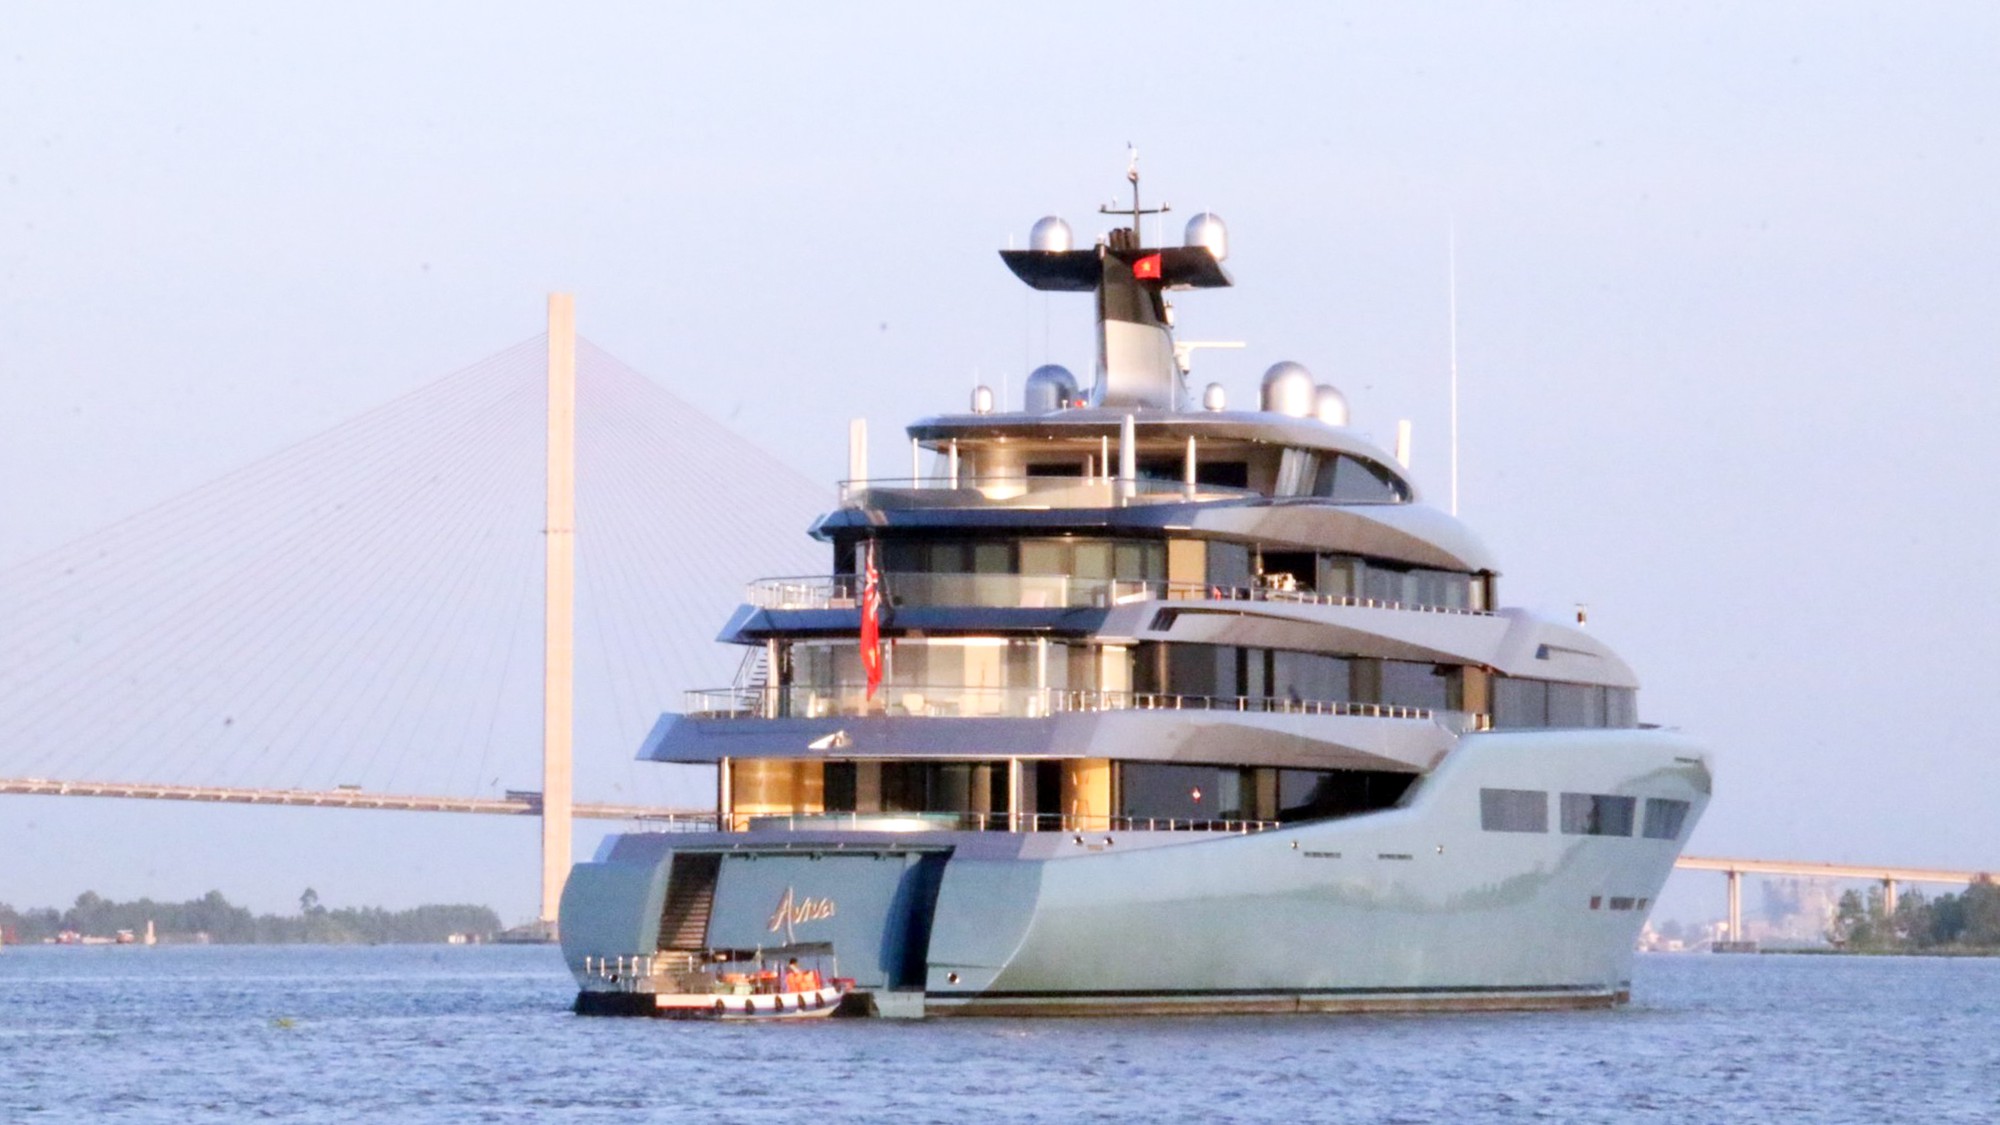 Cận cảnh siêu du thuyền triệu đô lướt sóng trên sông Hậu - Ảnh 5.